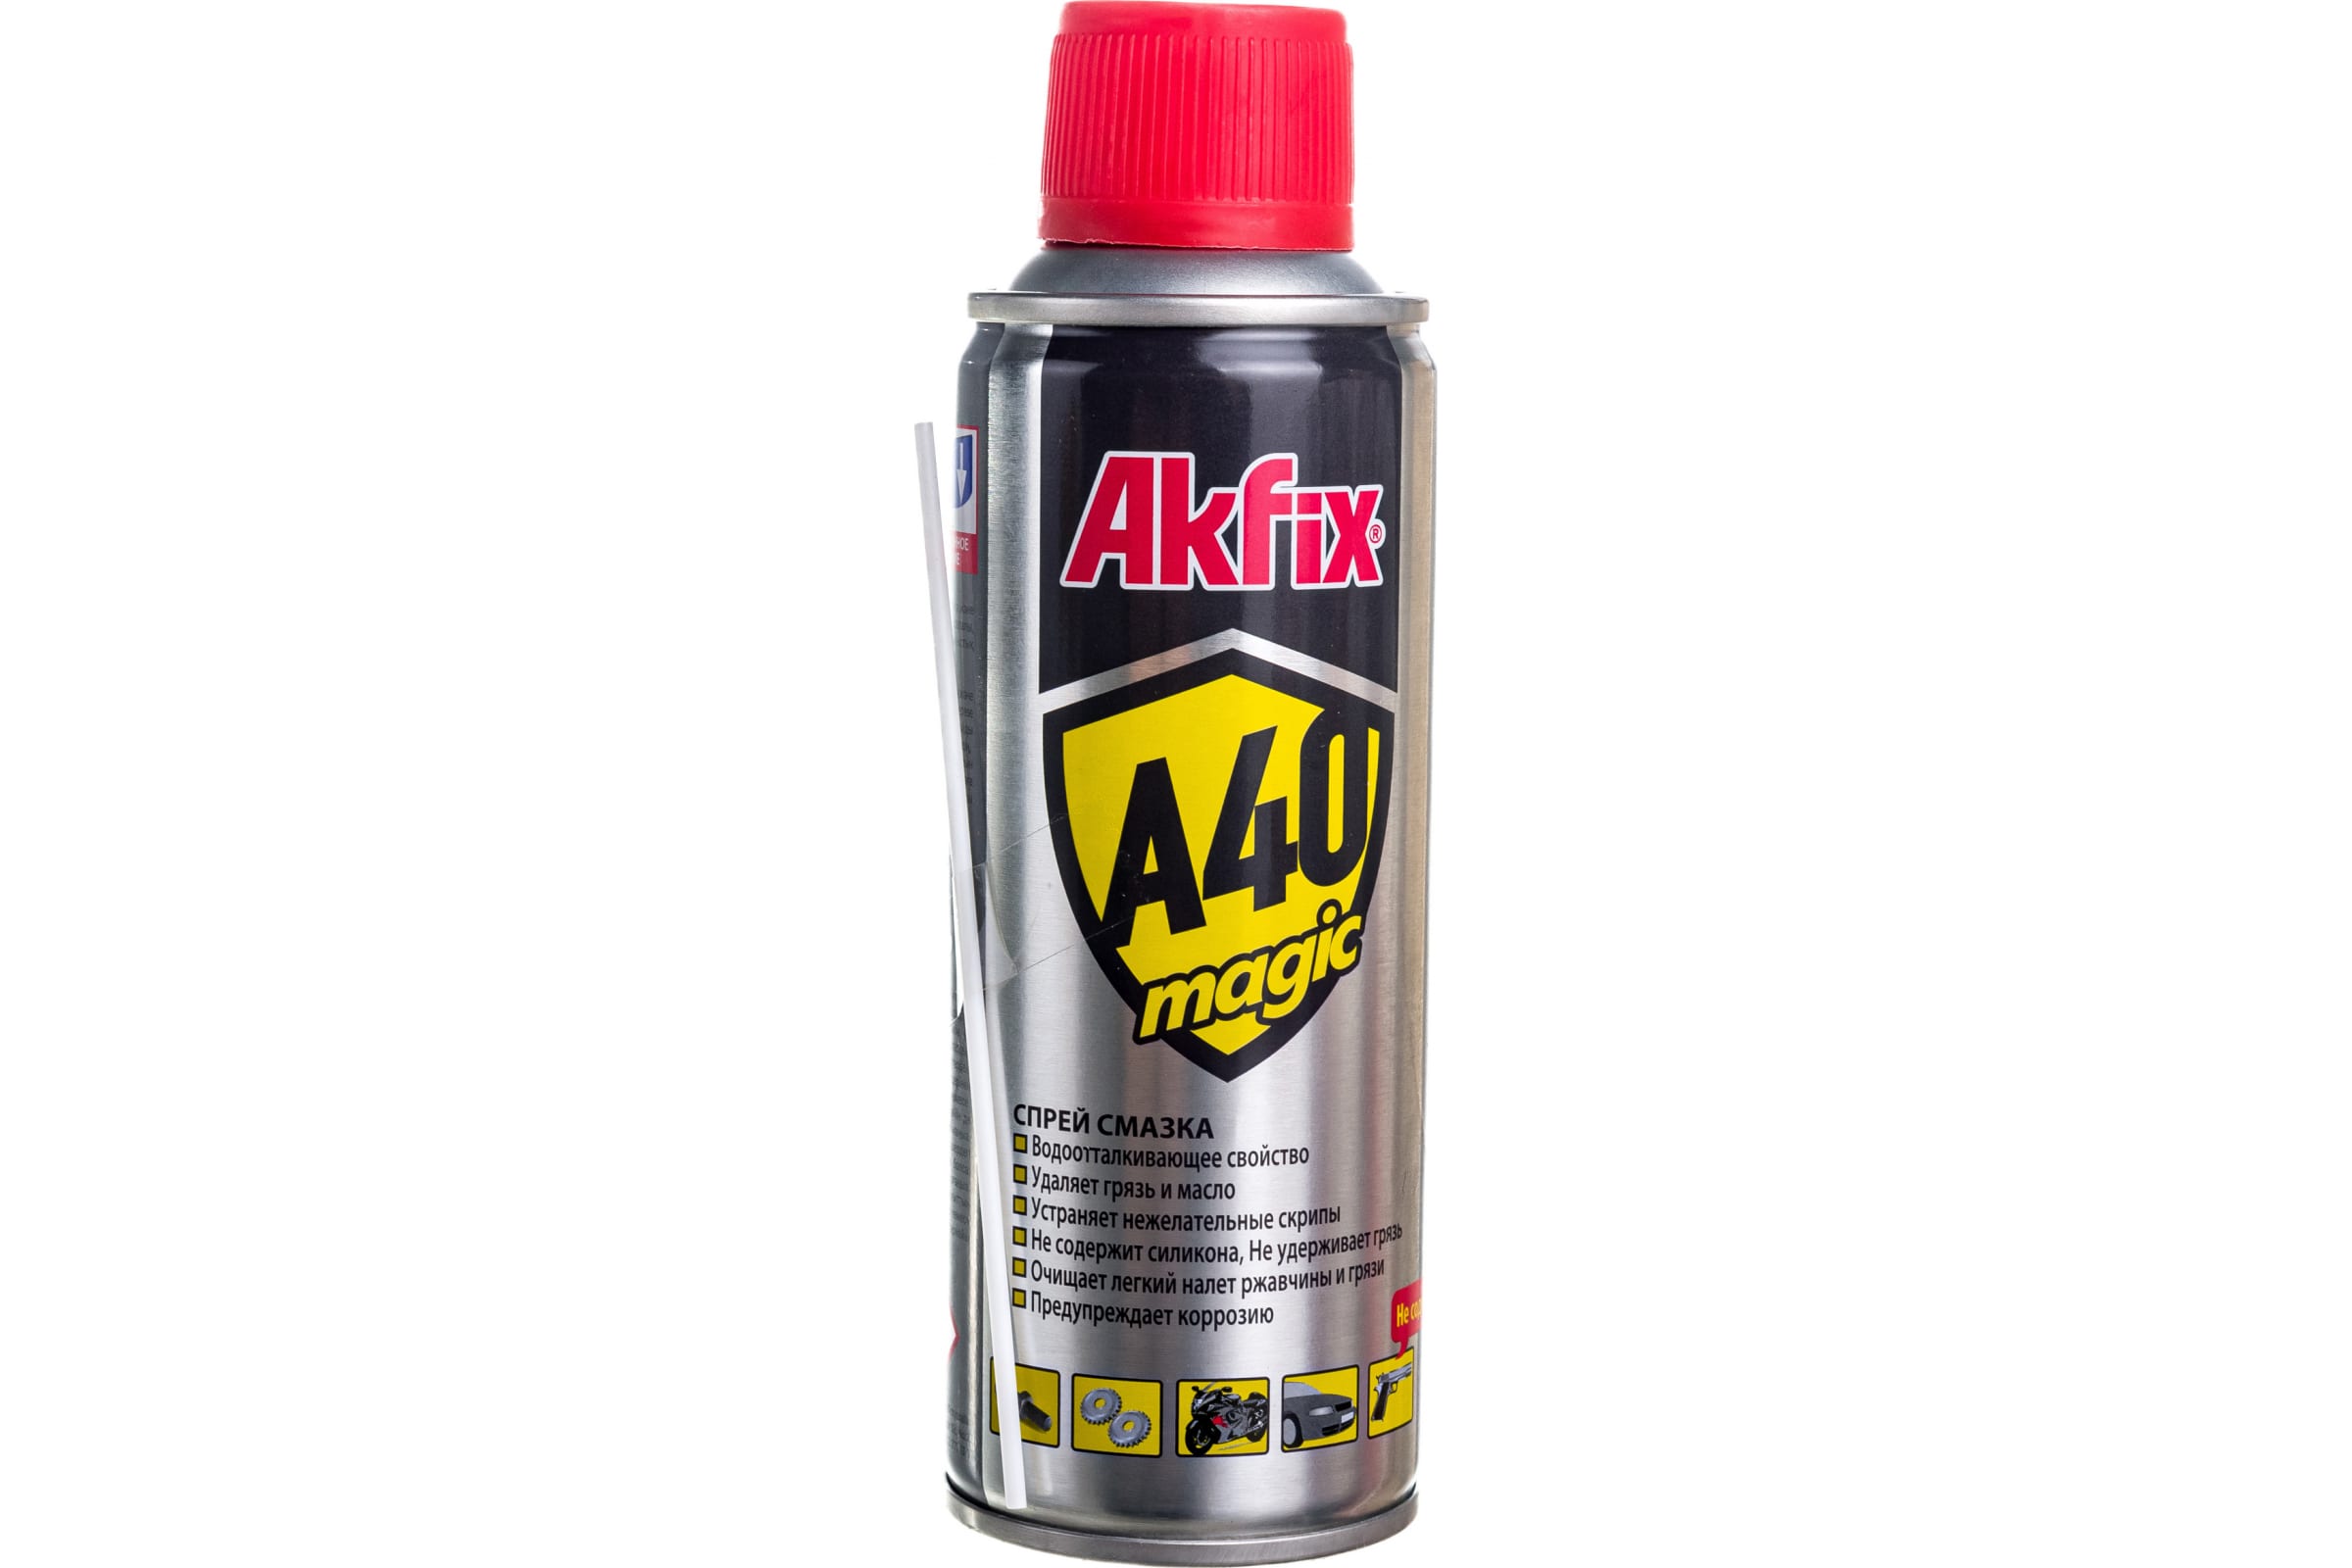 Akfix Универсальная смазка A40 Magic, 200 мл YA420 универсальная смазка dde 241 529